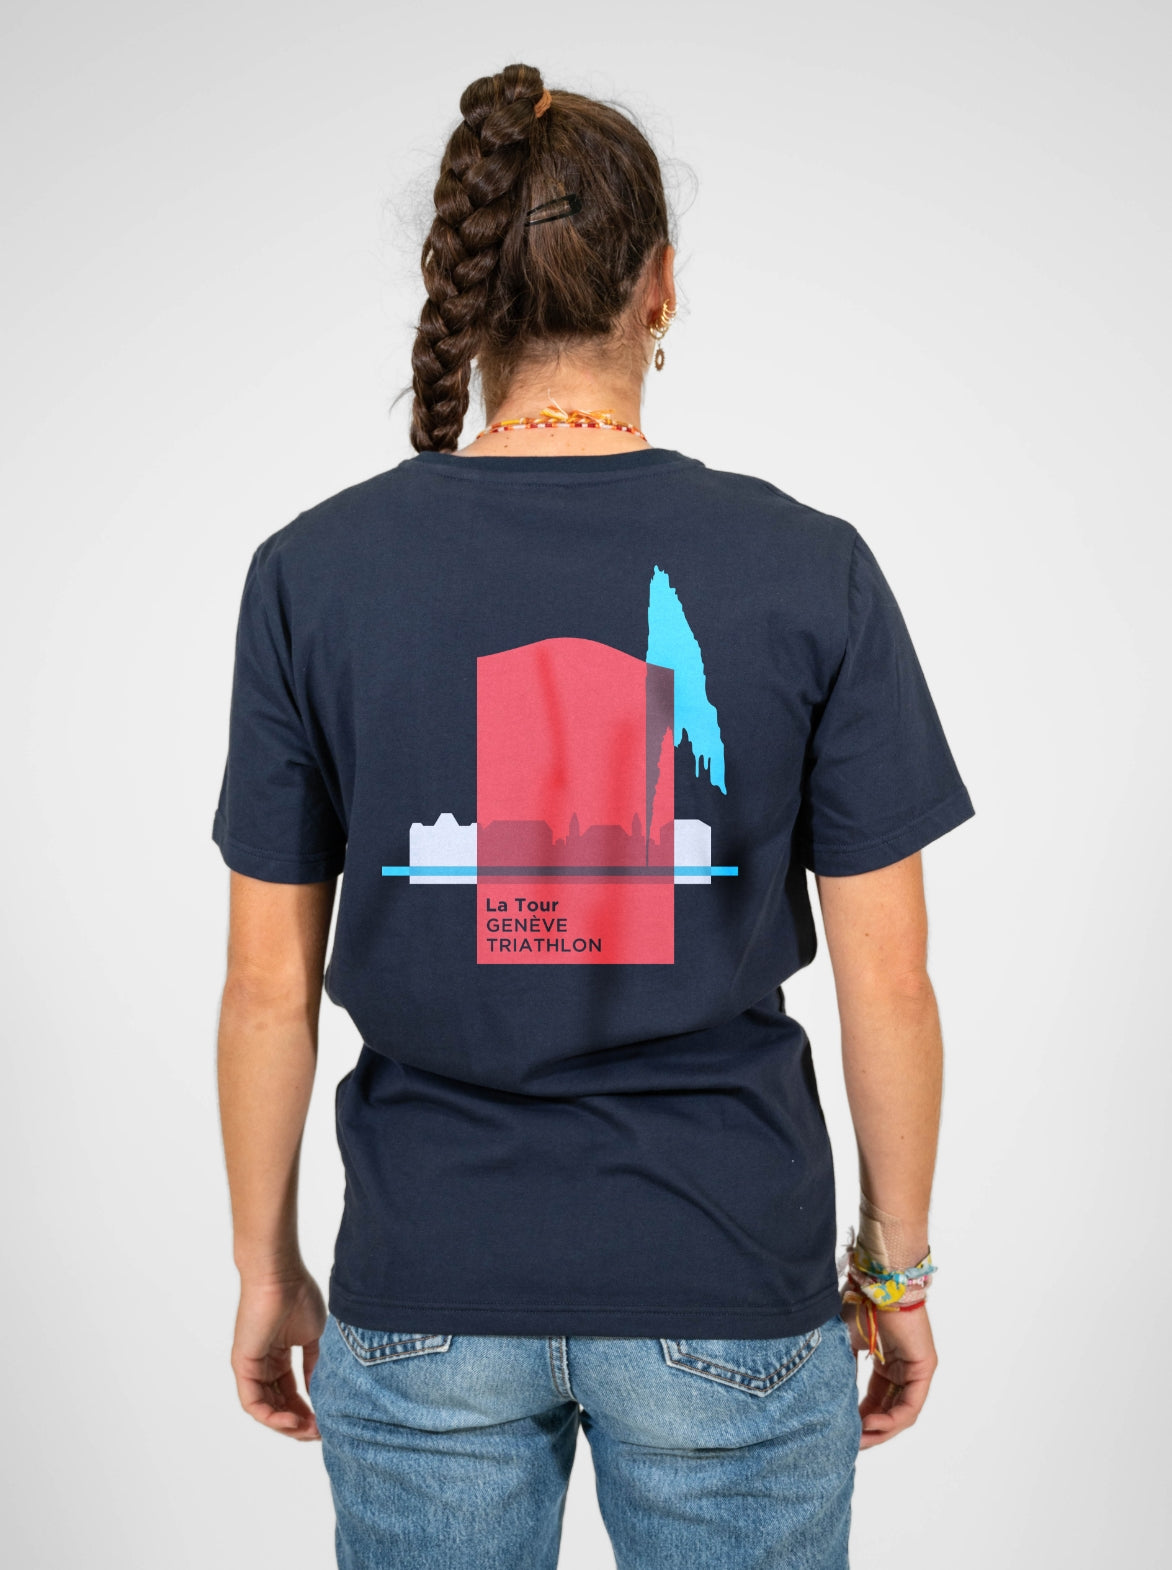 T-shirt coton Femme Made in France et Bio — La Tour Genève Triathlon